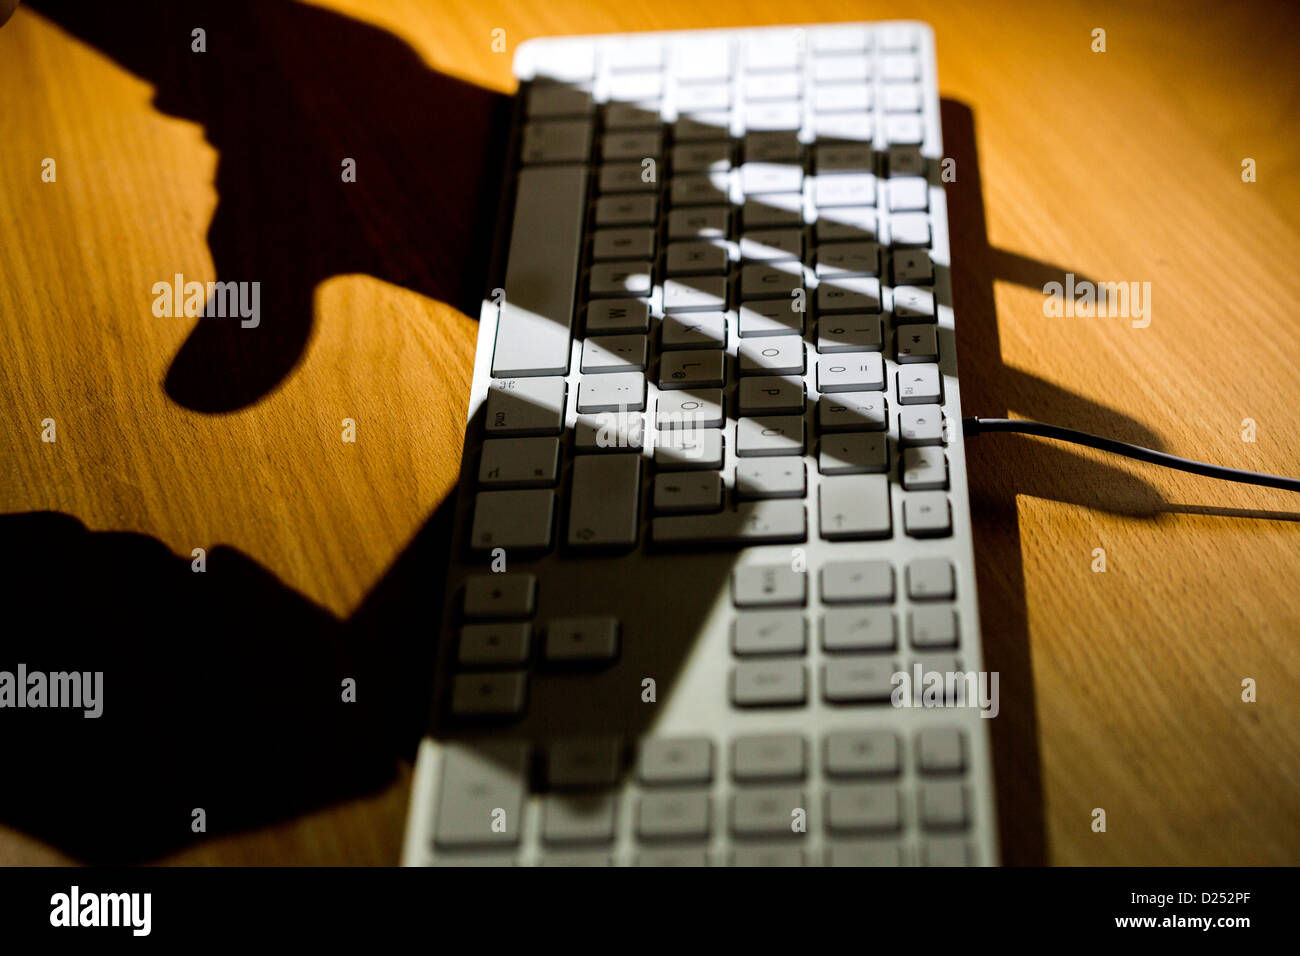 Utilizzo di una carta di credito in Internet, digitando il numero della carta di credito sulla tastiera di un computer. Foto Stock